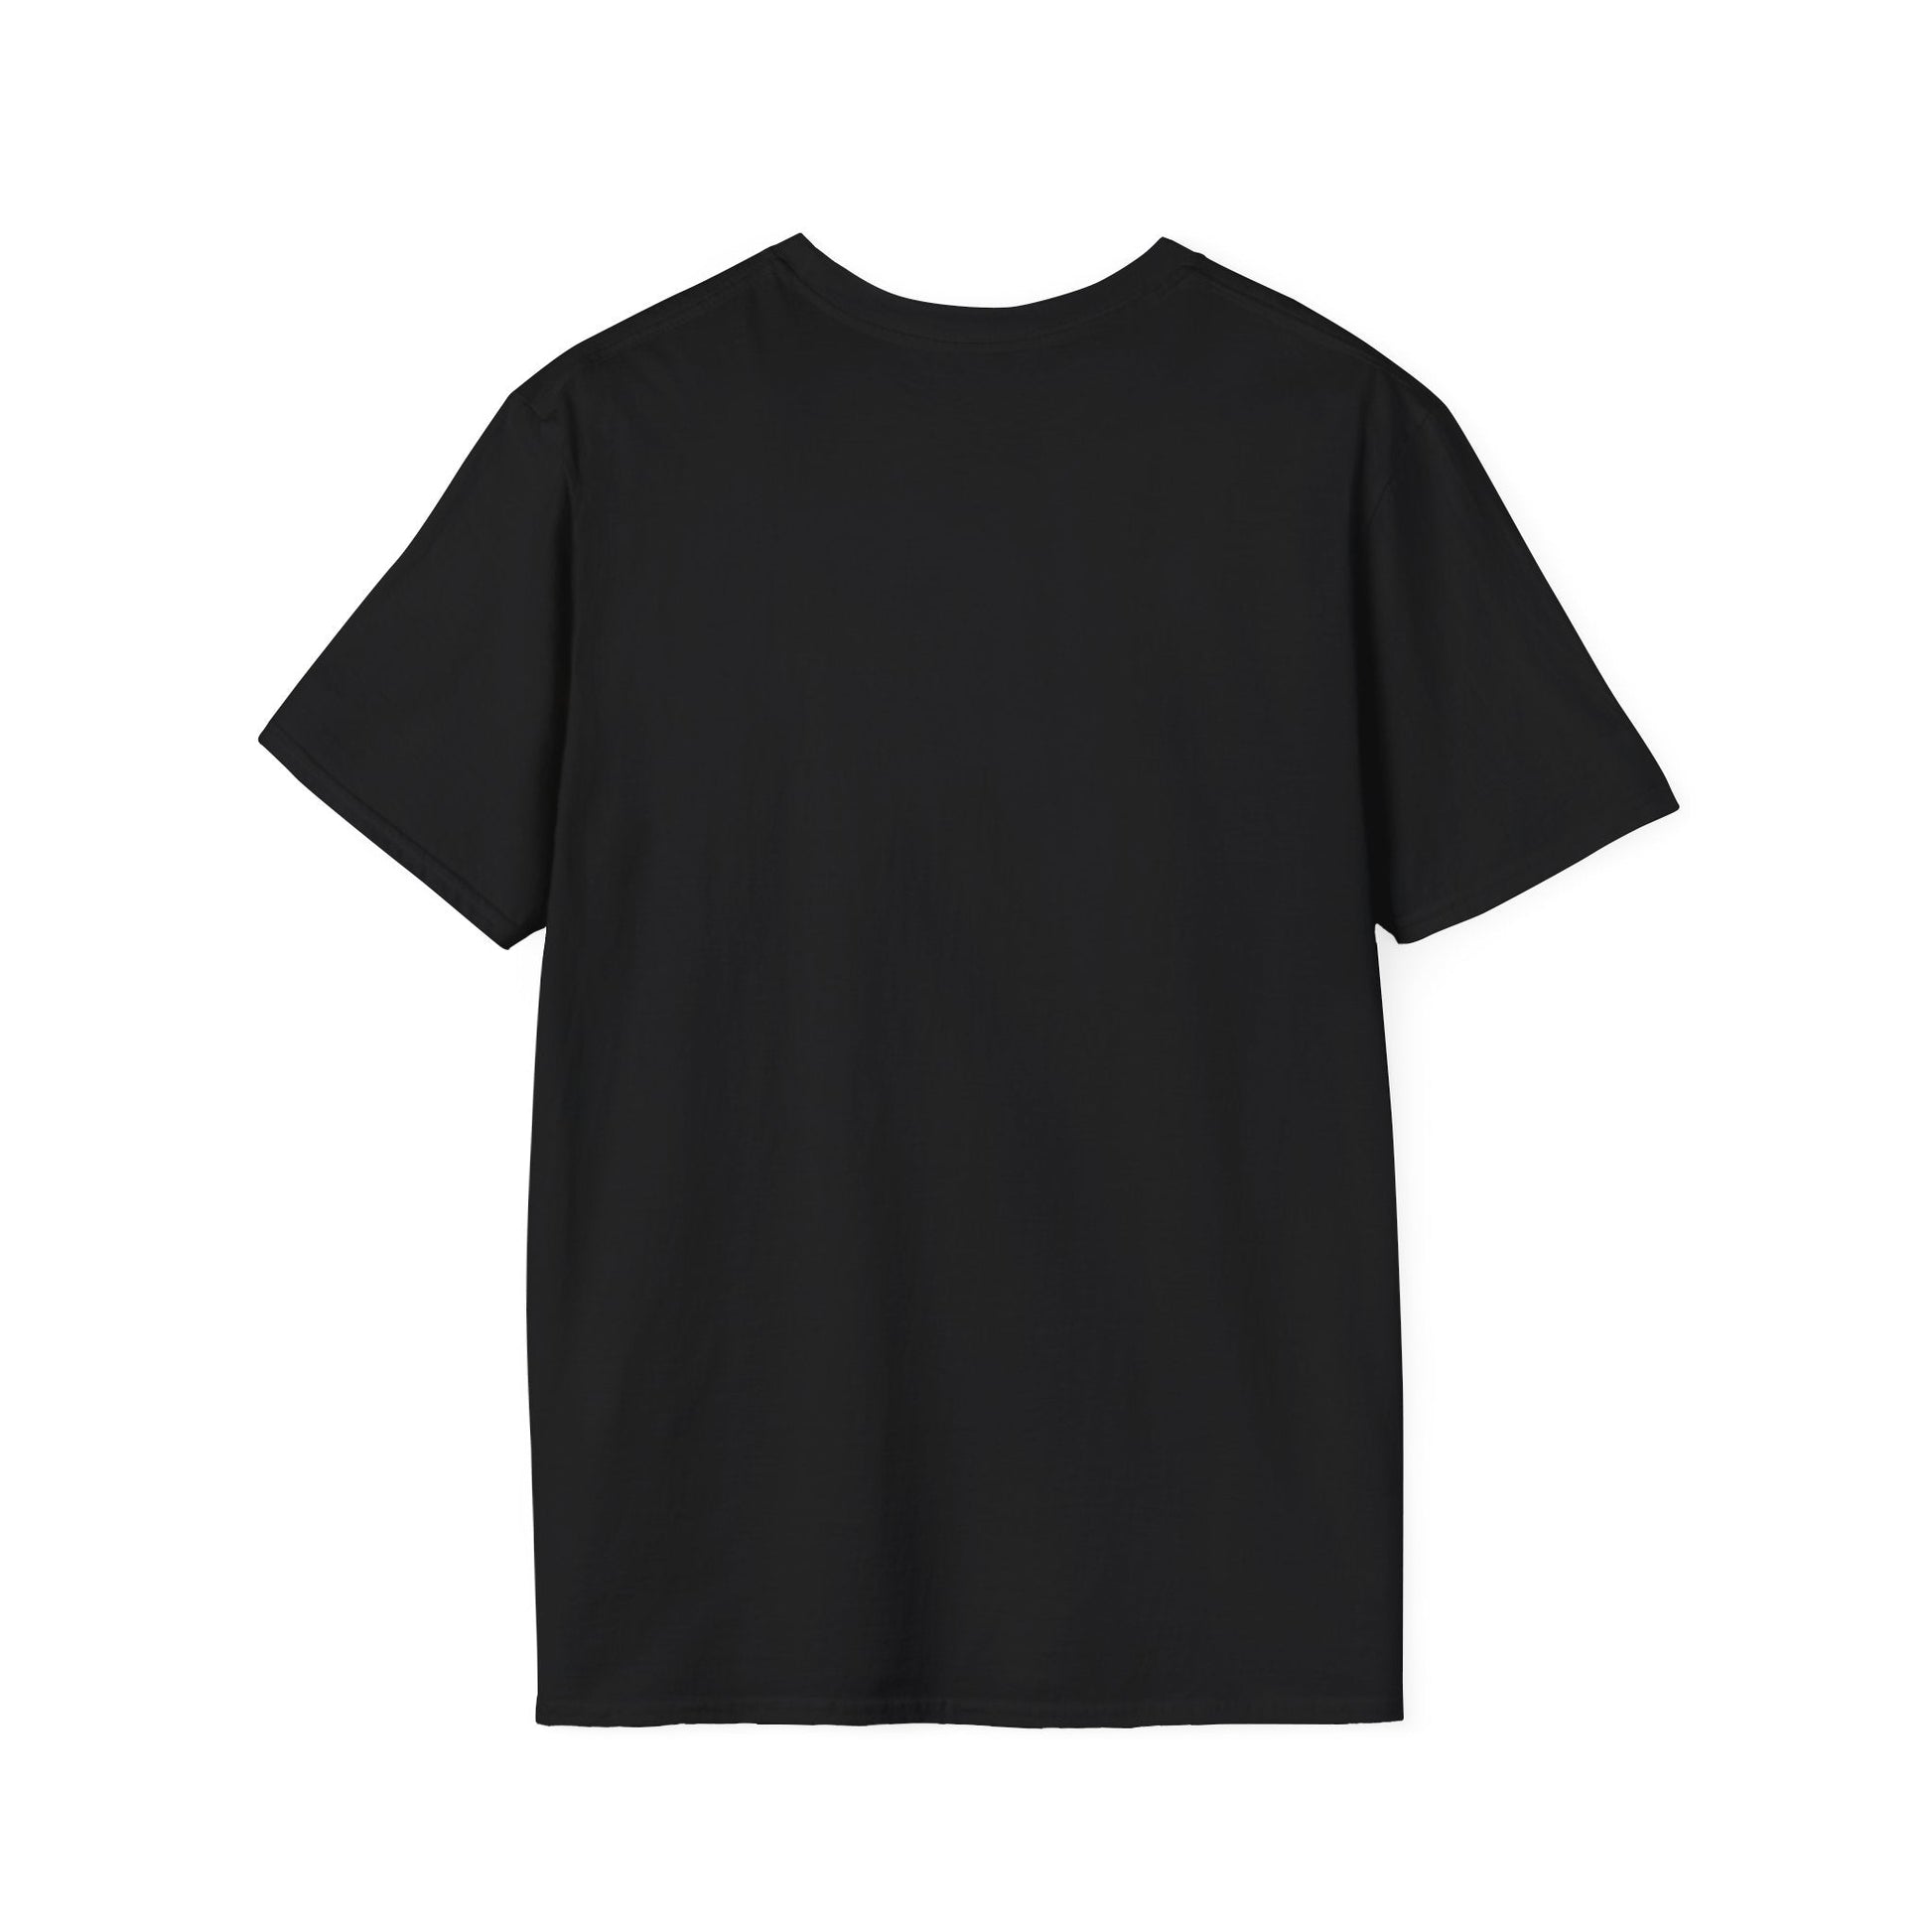 Outfique T-Shirt | Outfique | T-Shirt | Crew neck